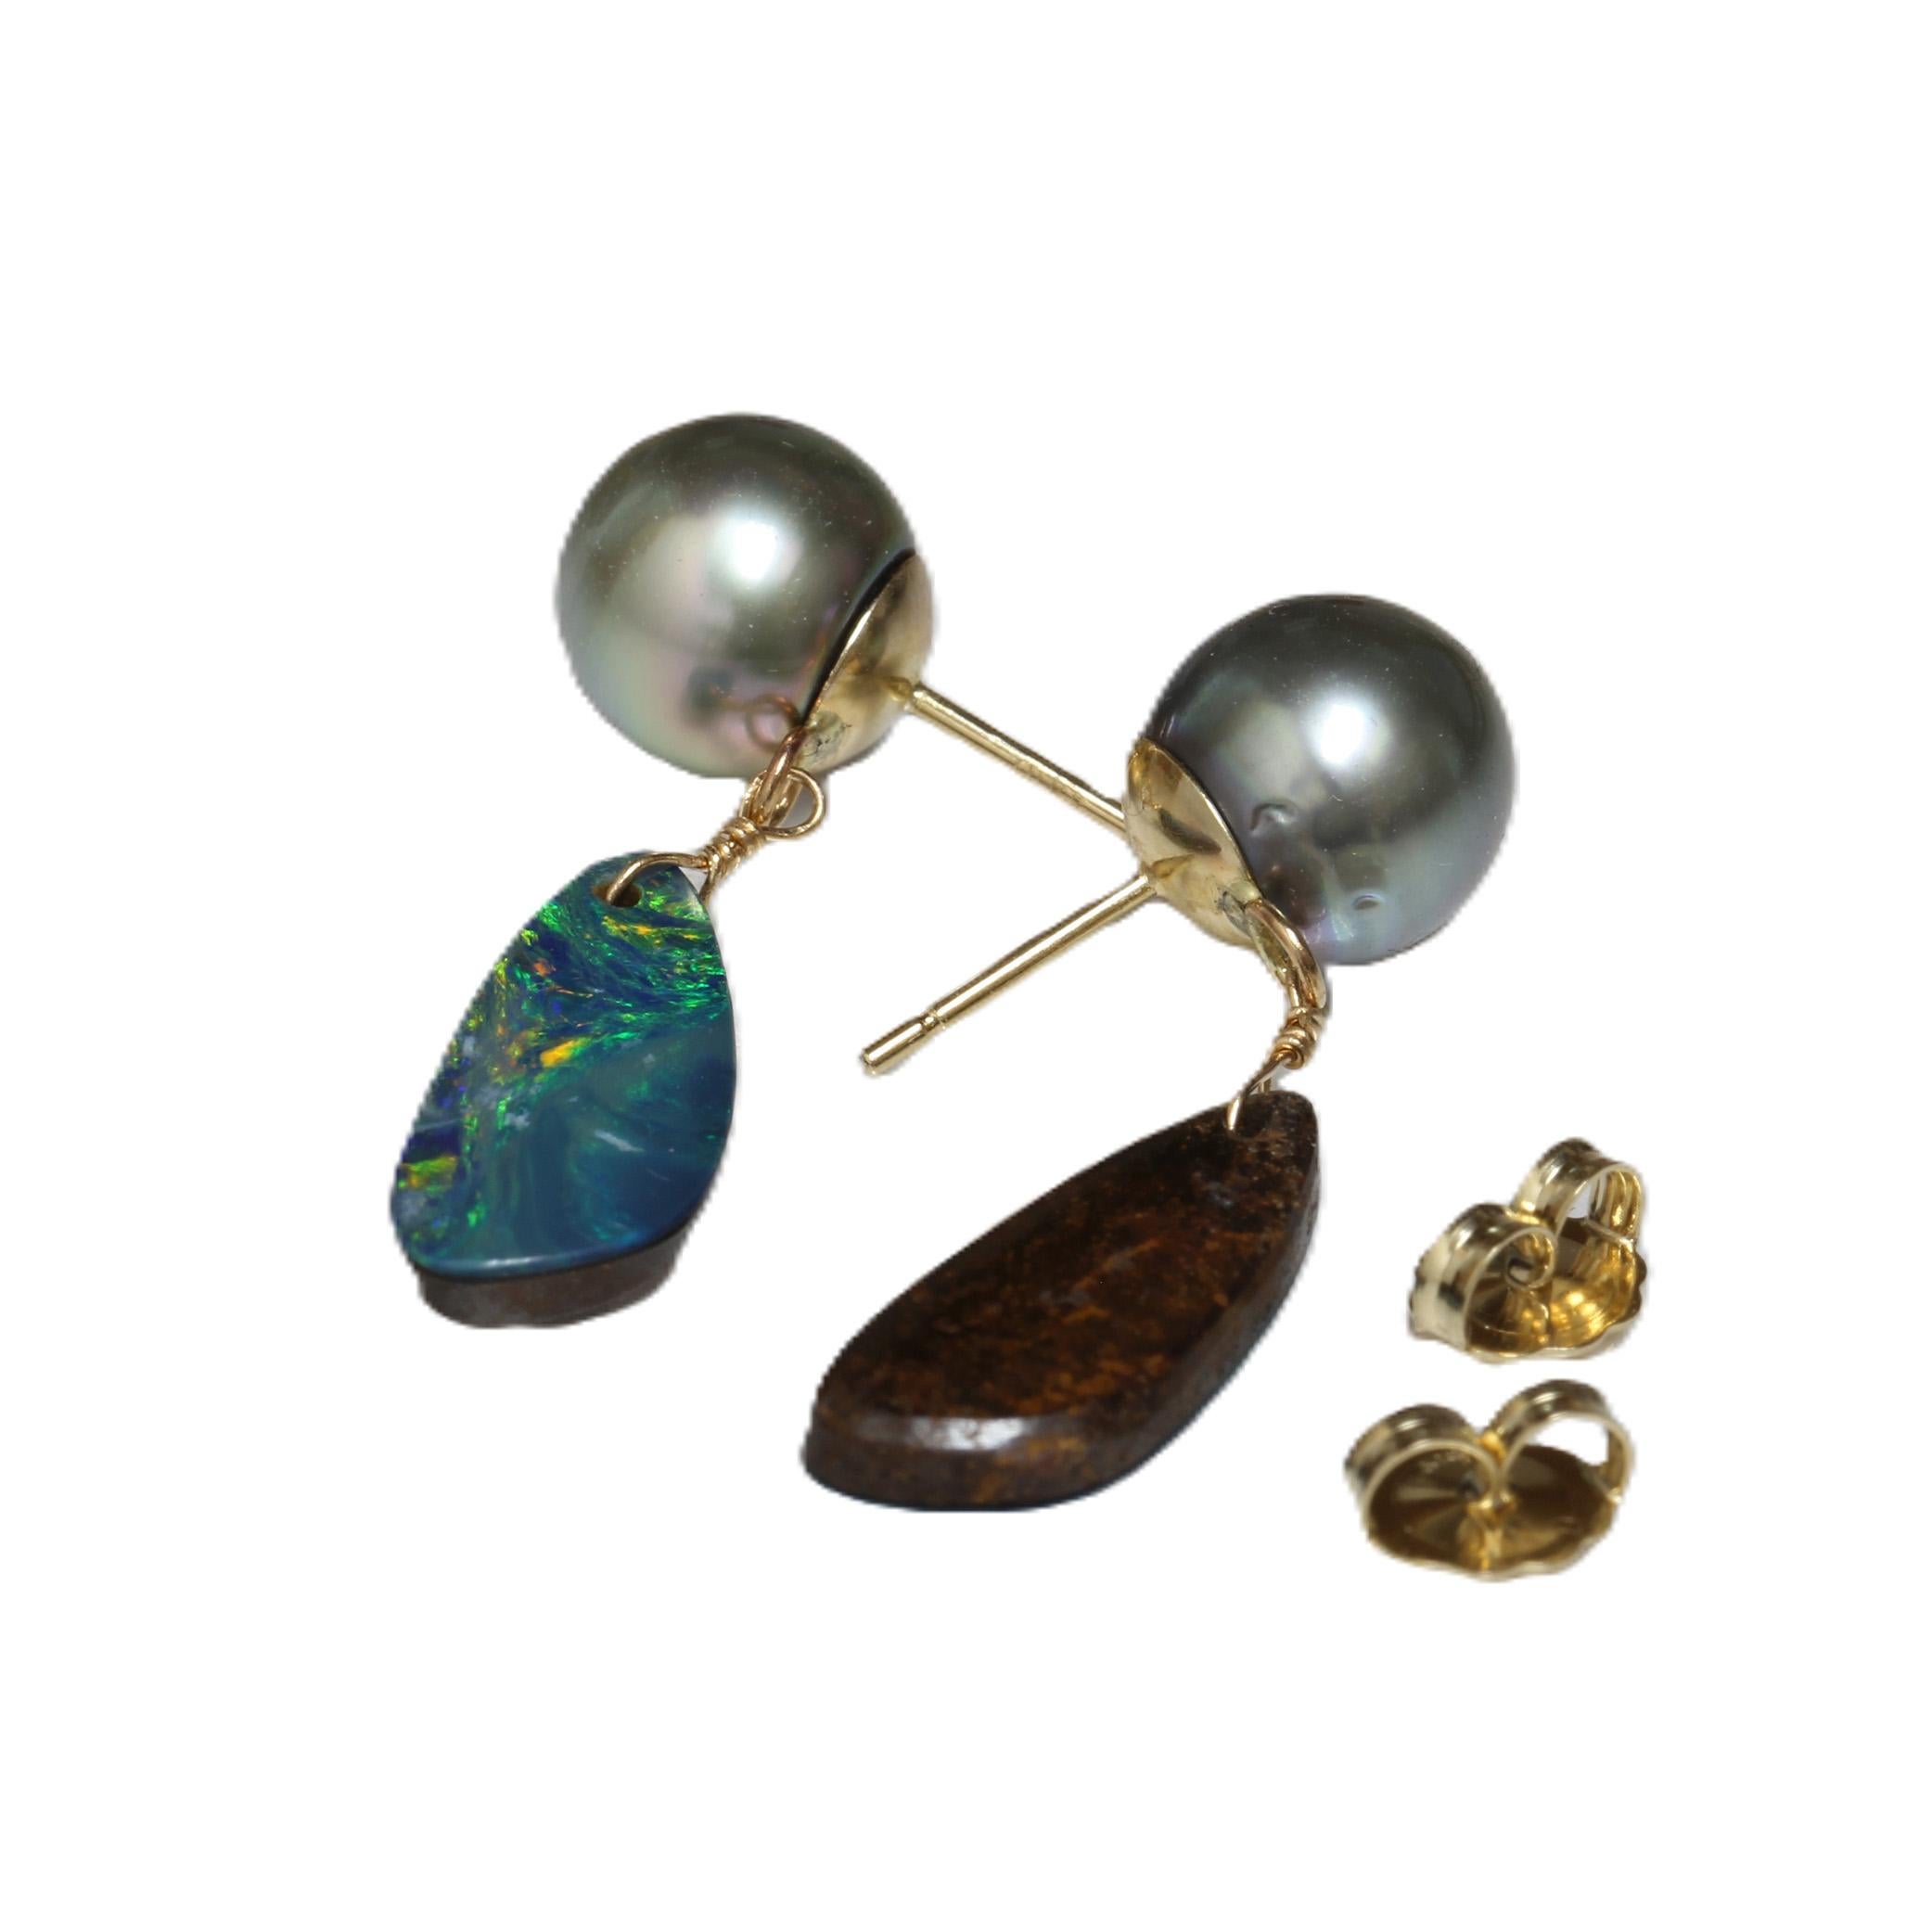 Herkunft: Französisch-Polynesien
Perlen-Typ: Tahiti-Perlen
Perlengröße: 9,0 - 9,5 mm
Perlenfarbe: Naturtürkisgrün
Form der Perle: Rund
Perle Oberfläche: AAA
Perlenglanz: AAA Edelstein
Perlmutt: Top
Opal: Ovale Form
Länge:	Etwa 30 mm
Gold:	14kt